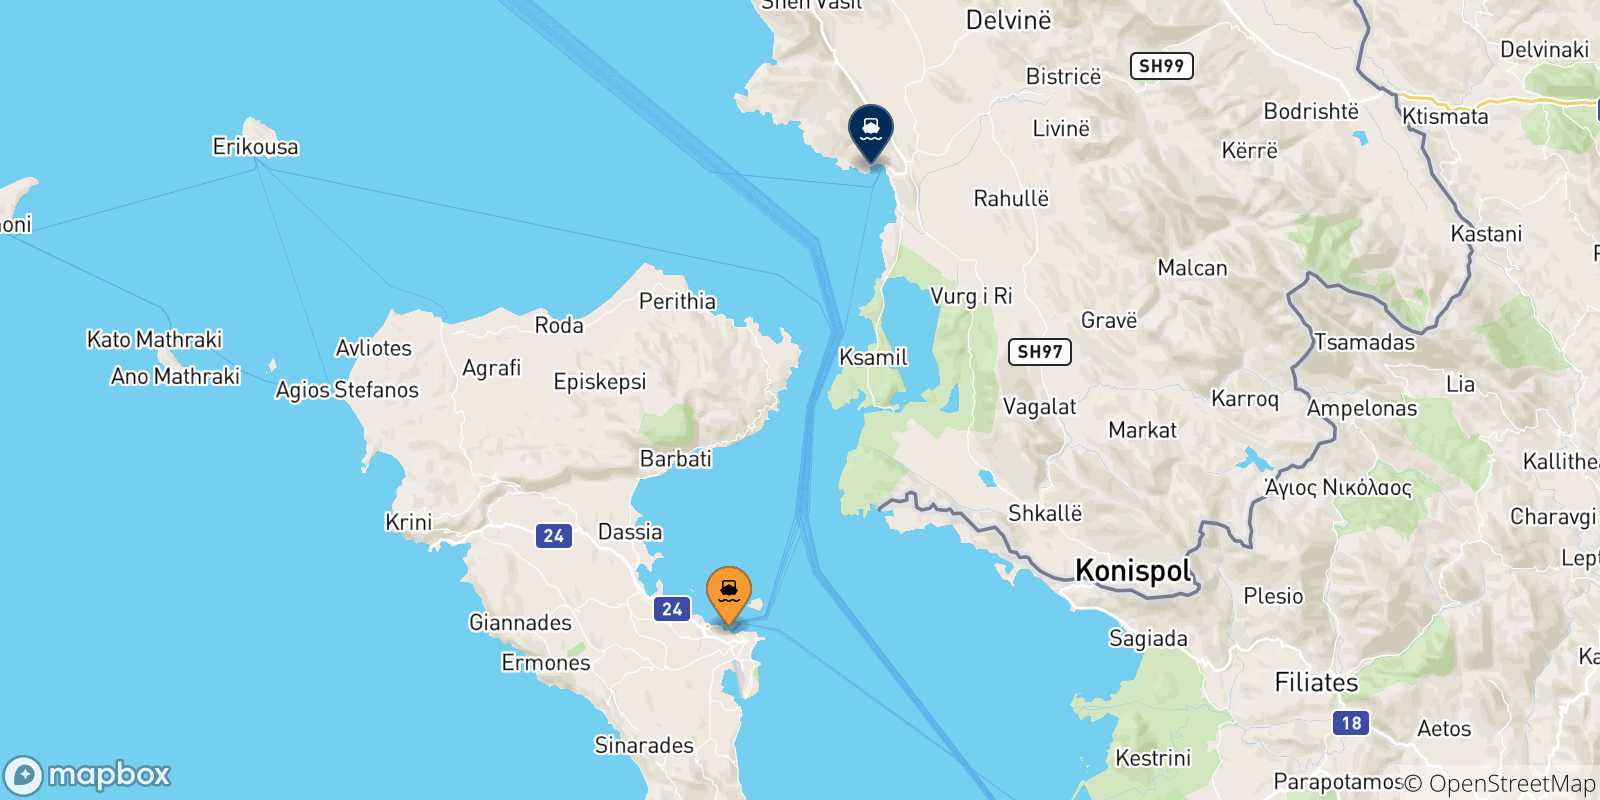 Mappa delle possibili rotte tra Corfu e l'Albania